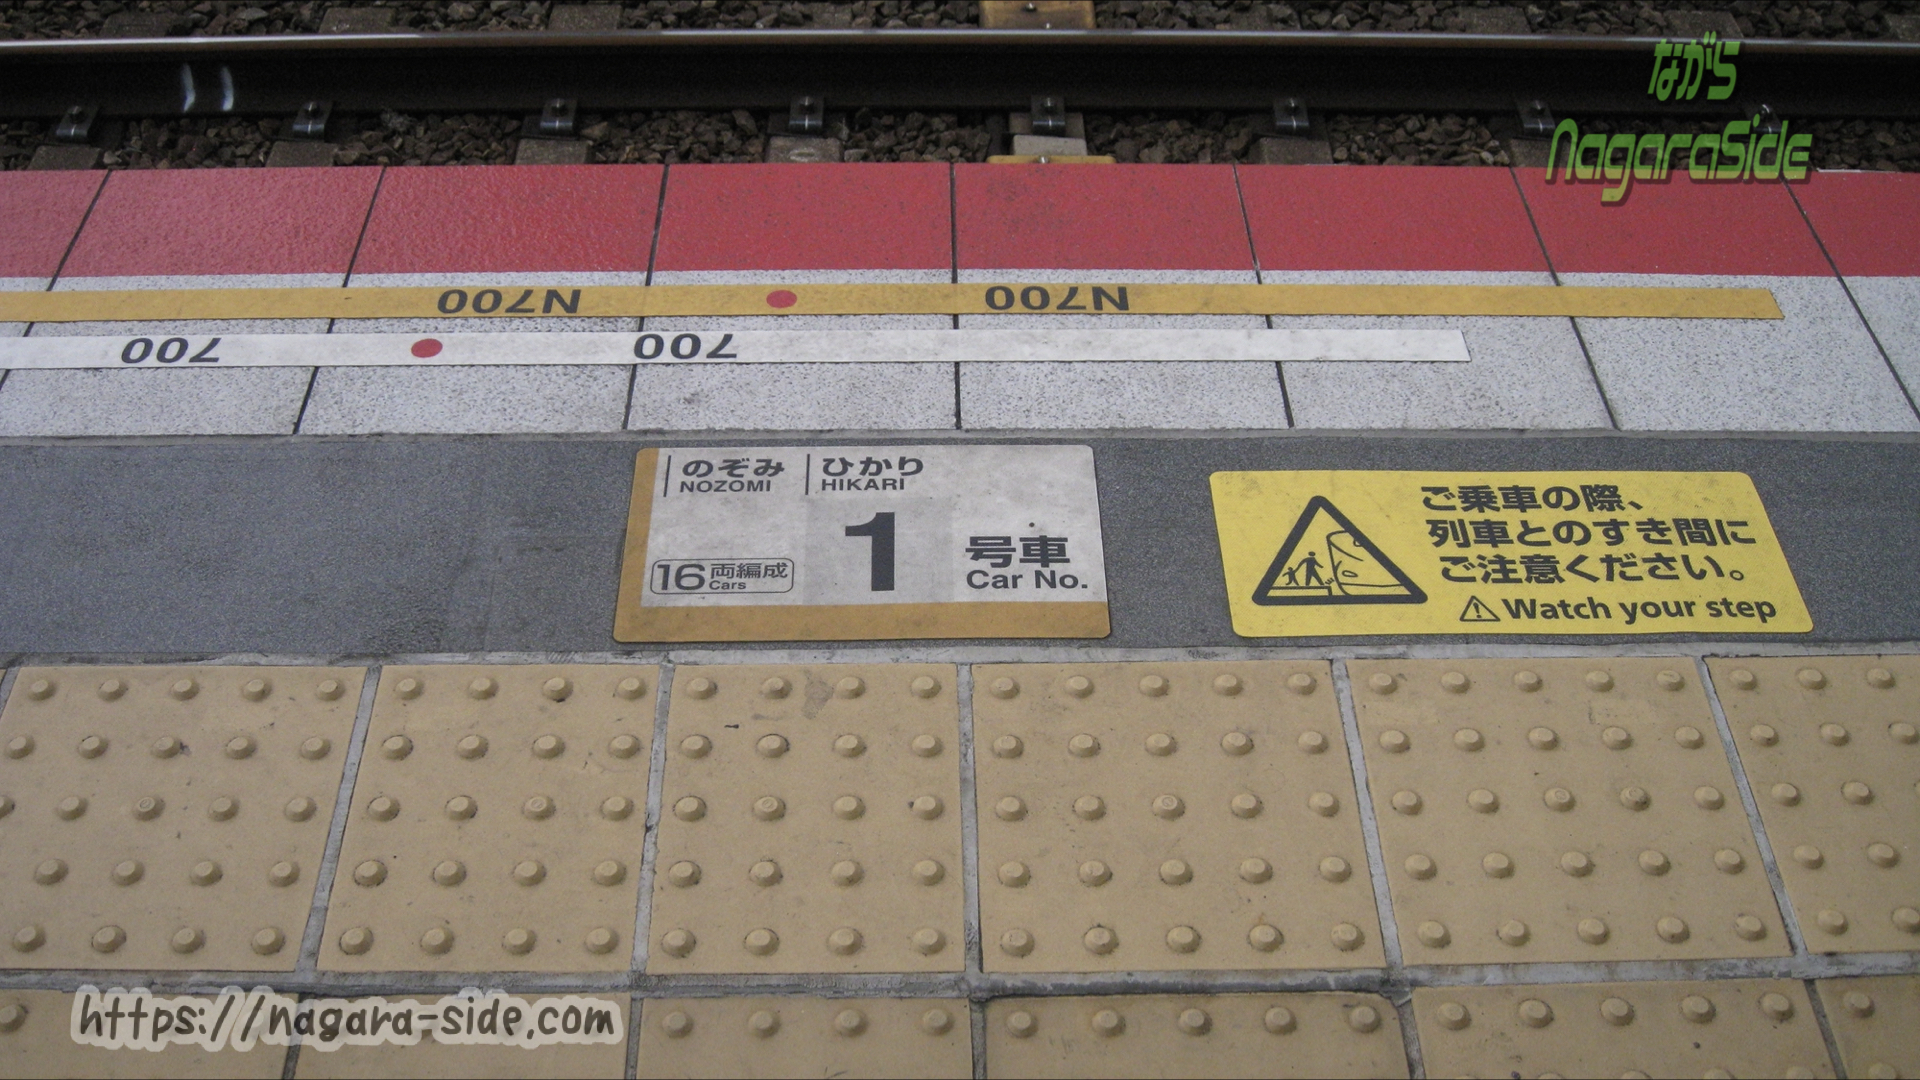 700系とN700系新幹線の乗車位置の違い